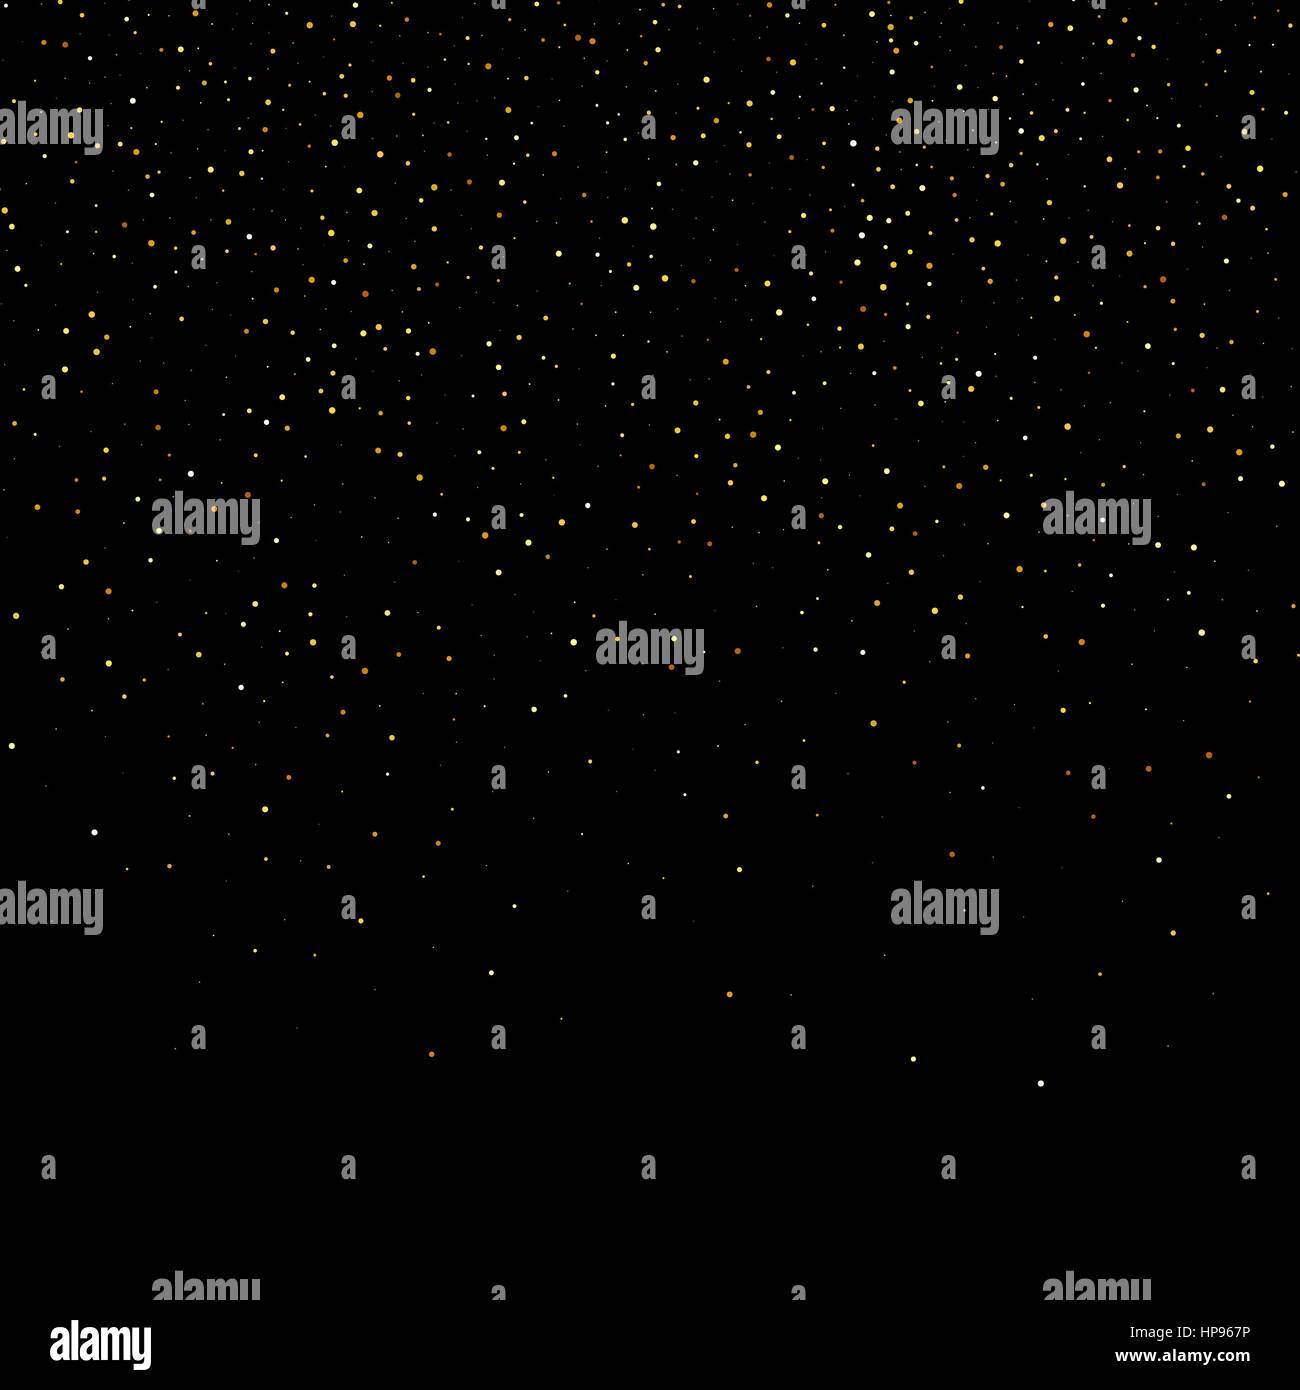 Vektor Goldstaub Glitzer Sterne Welle Feuerwerk abstrakte schwarzen Hintergrund, Design-Vorlage Stock Vektor